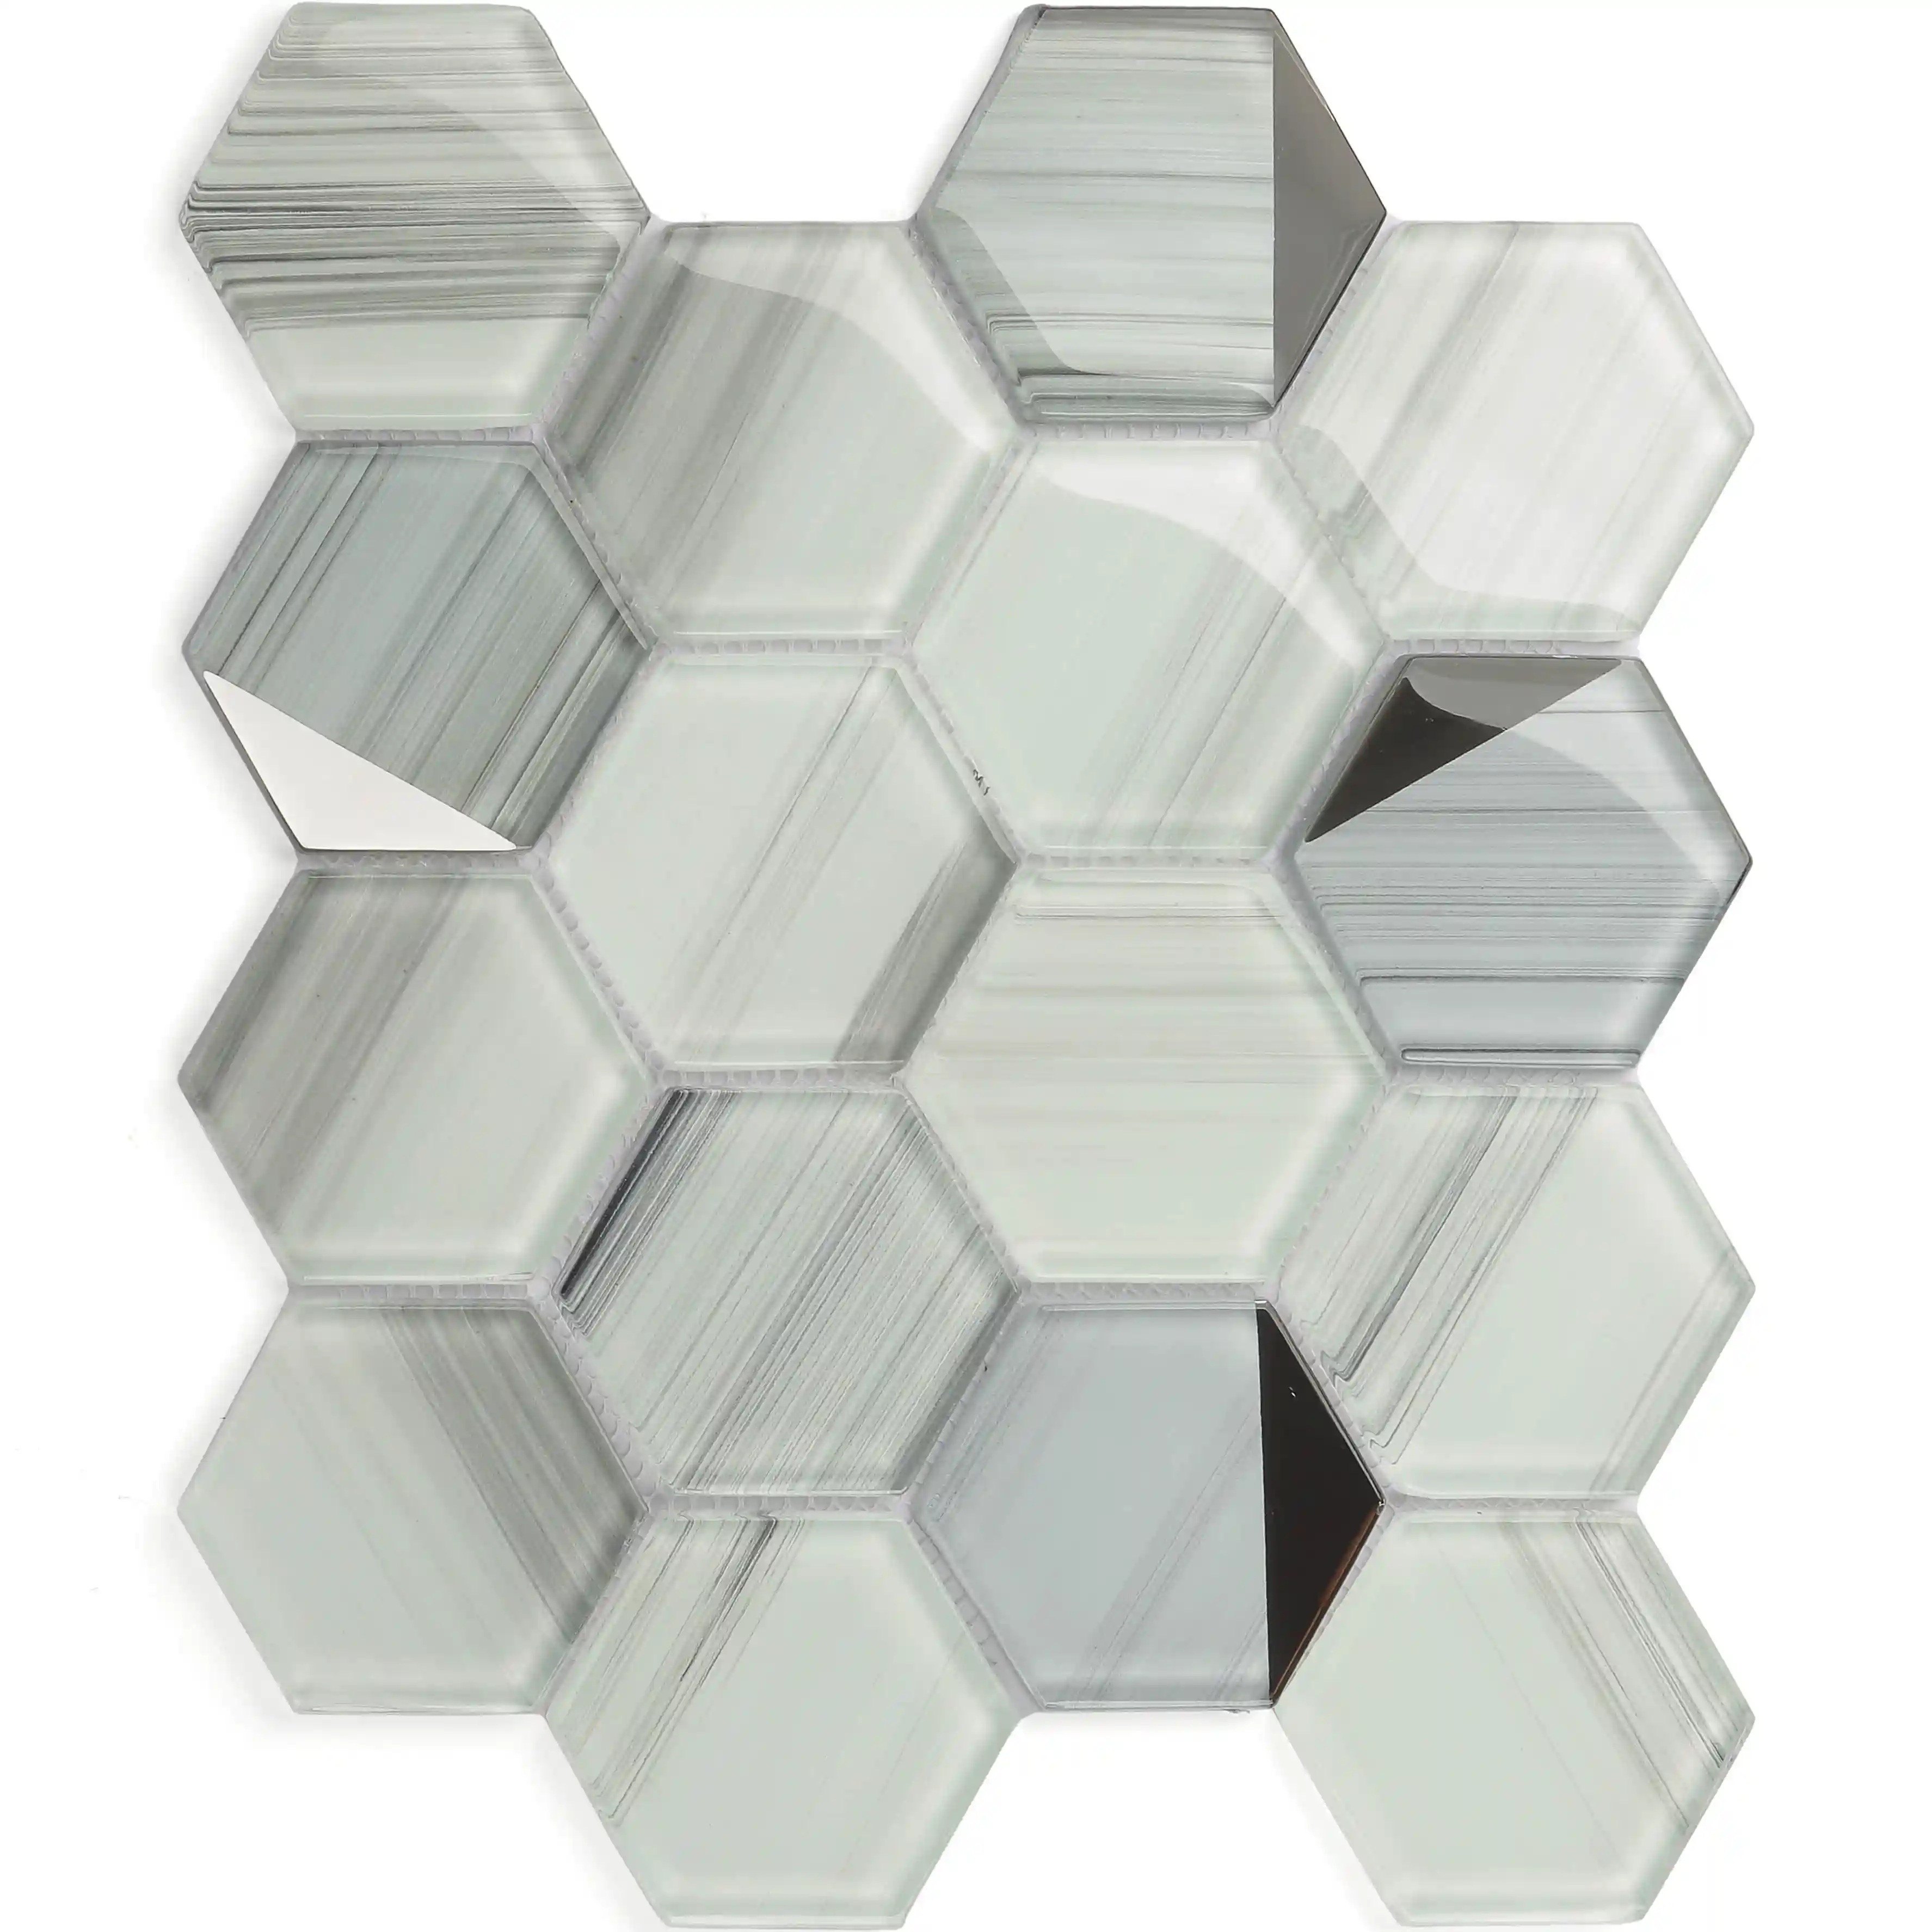 Semprotan dingin mosaik ubin keluaran baru Harga Panel dinding dari kaca berwarna kristal mosaik Foshan